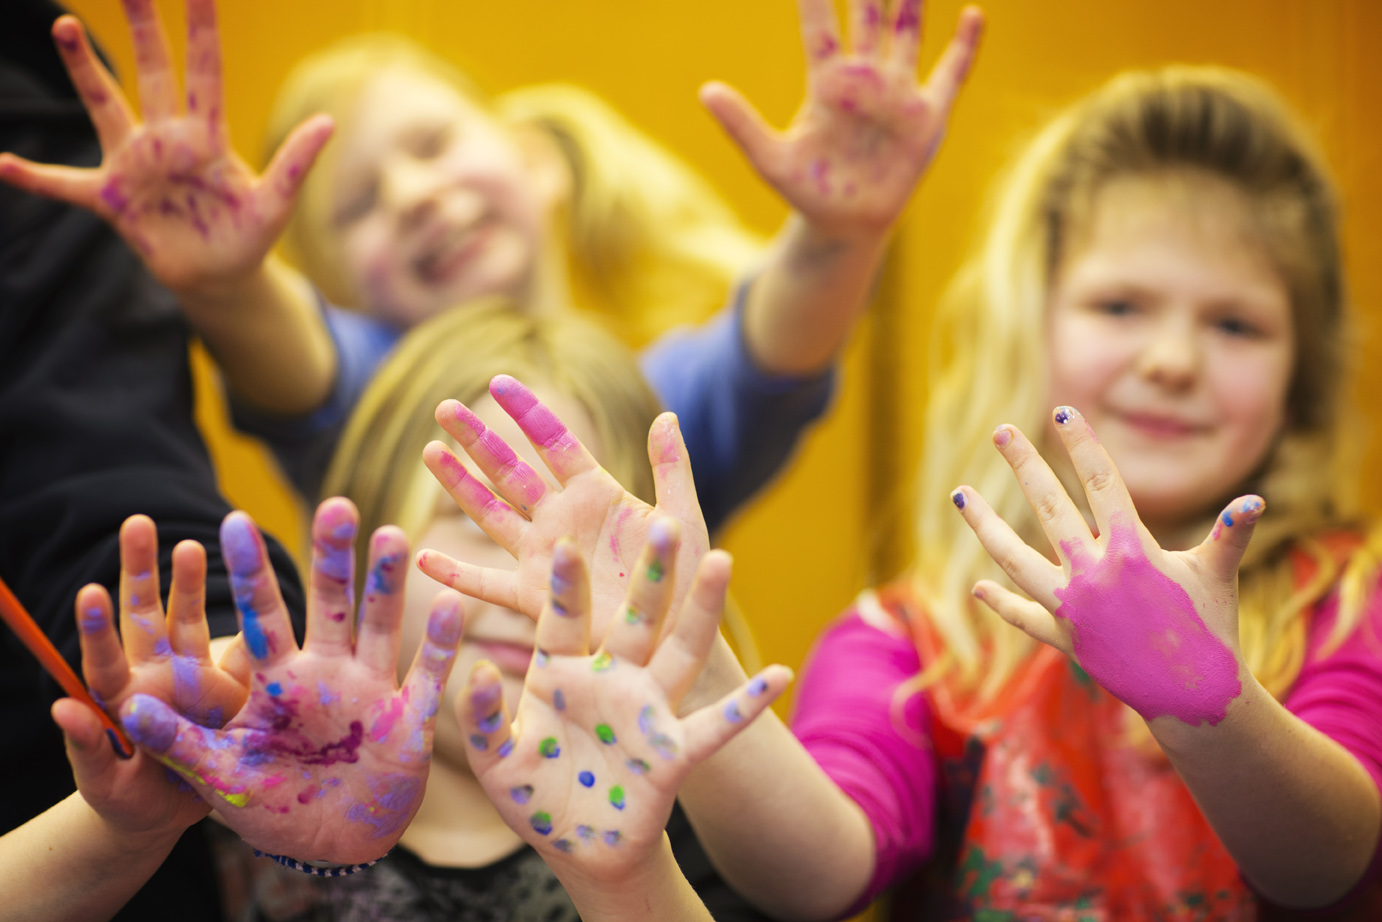 Glada barn med färger på fingrarna.